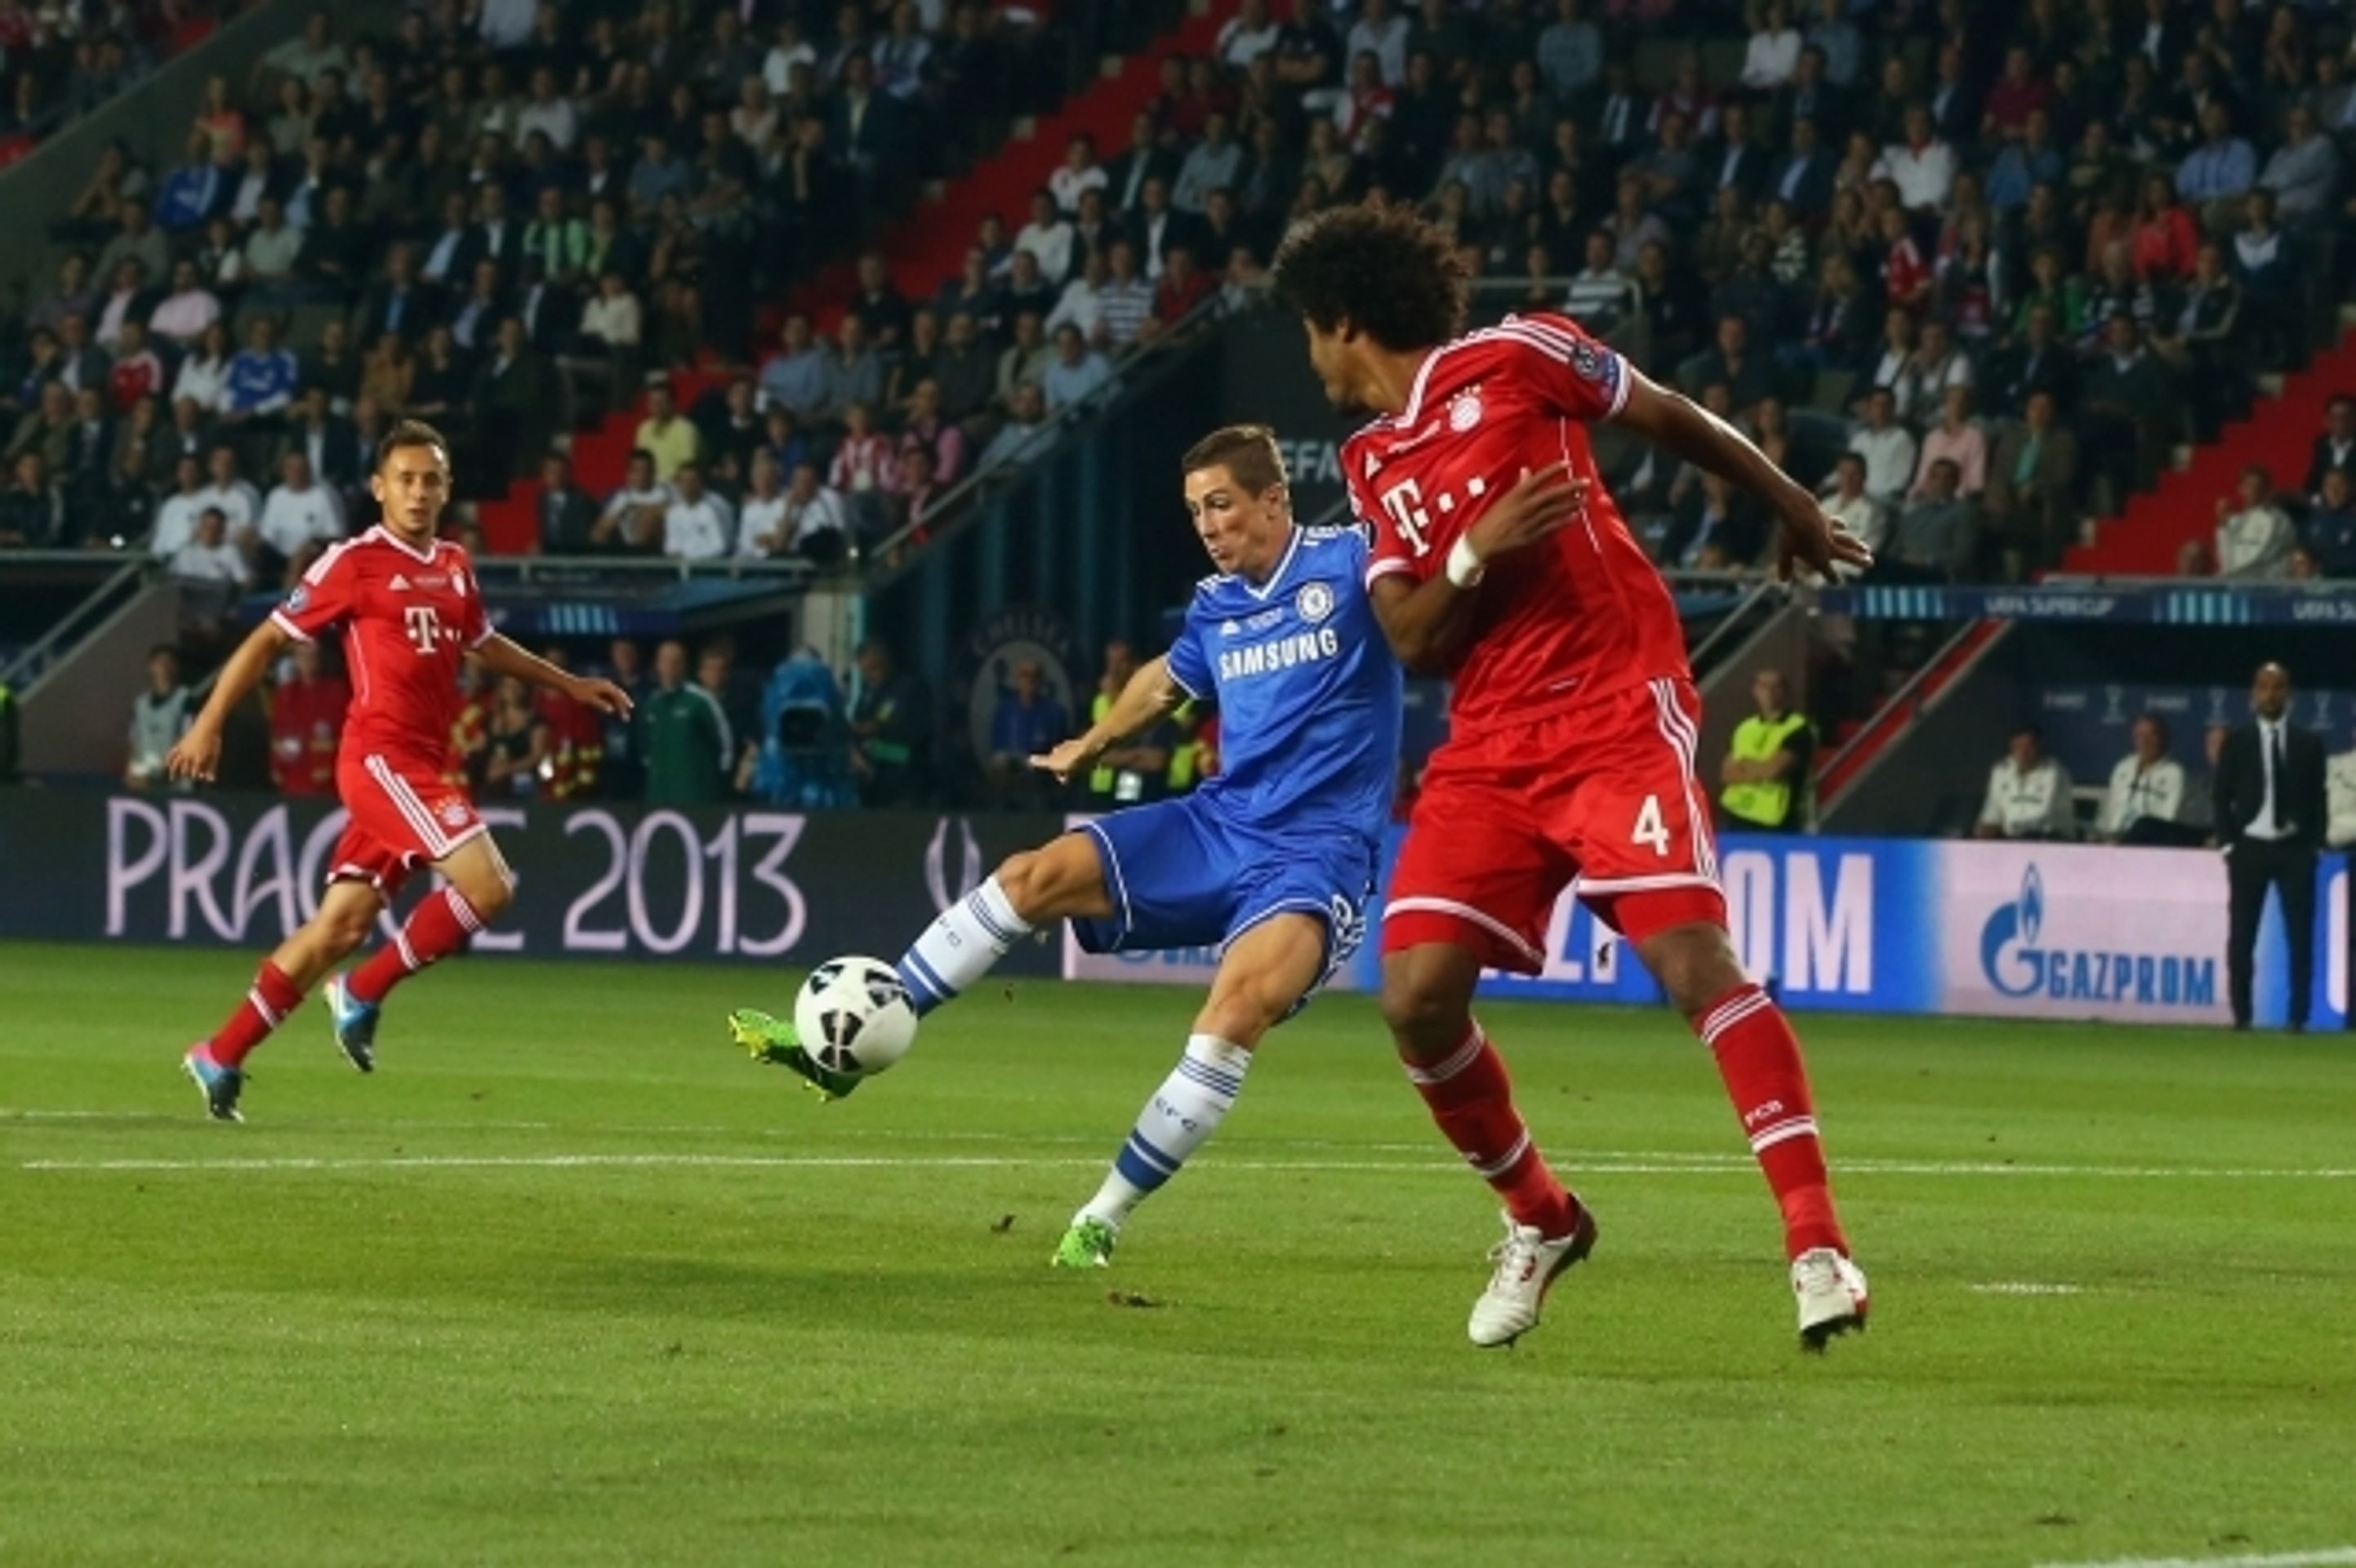 Superpohár v Edenu: Bayern - Chelsea - 23 - GALERIE: Superpohár Bayern - Chelsea v Edenu (23/28)